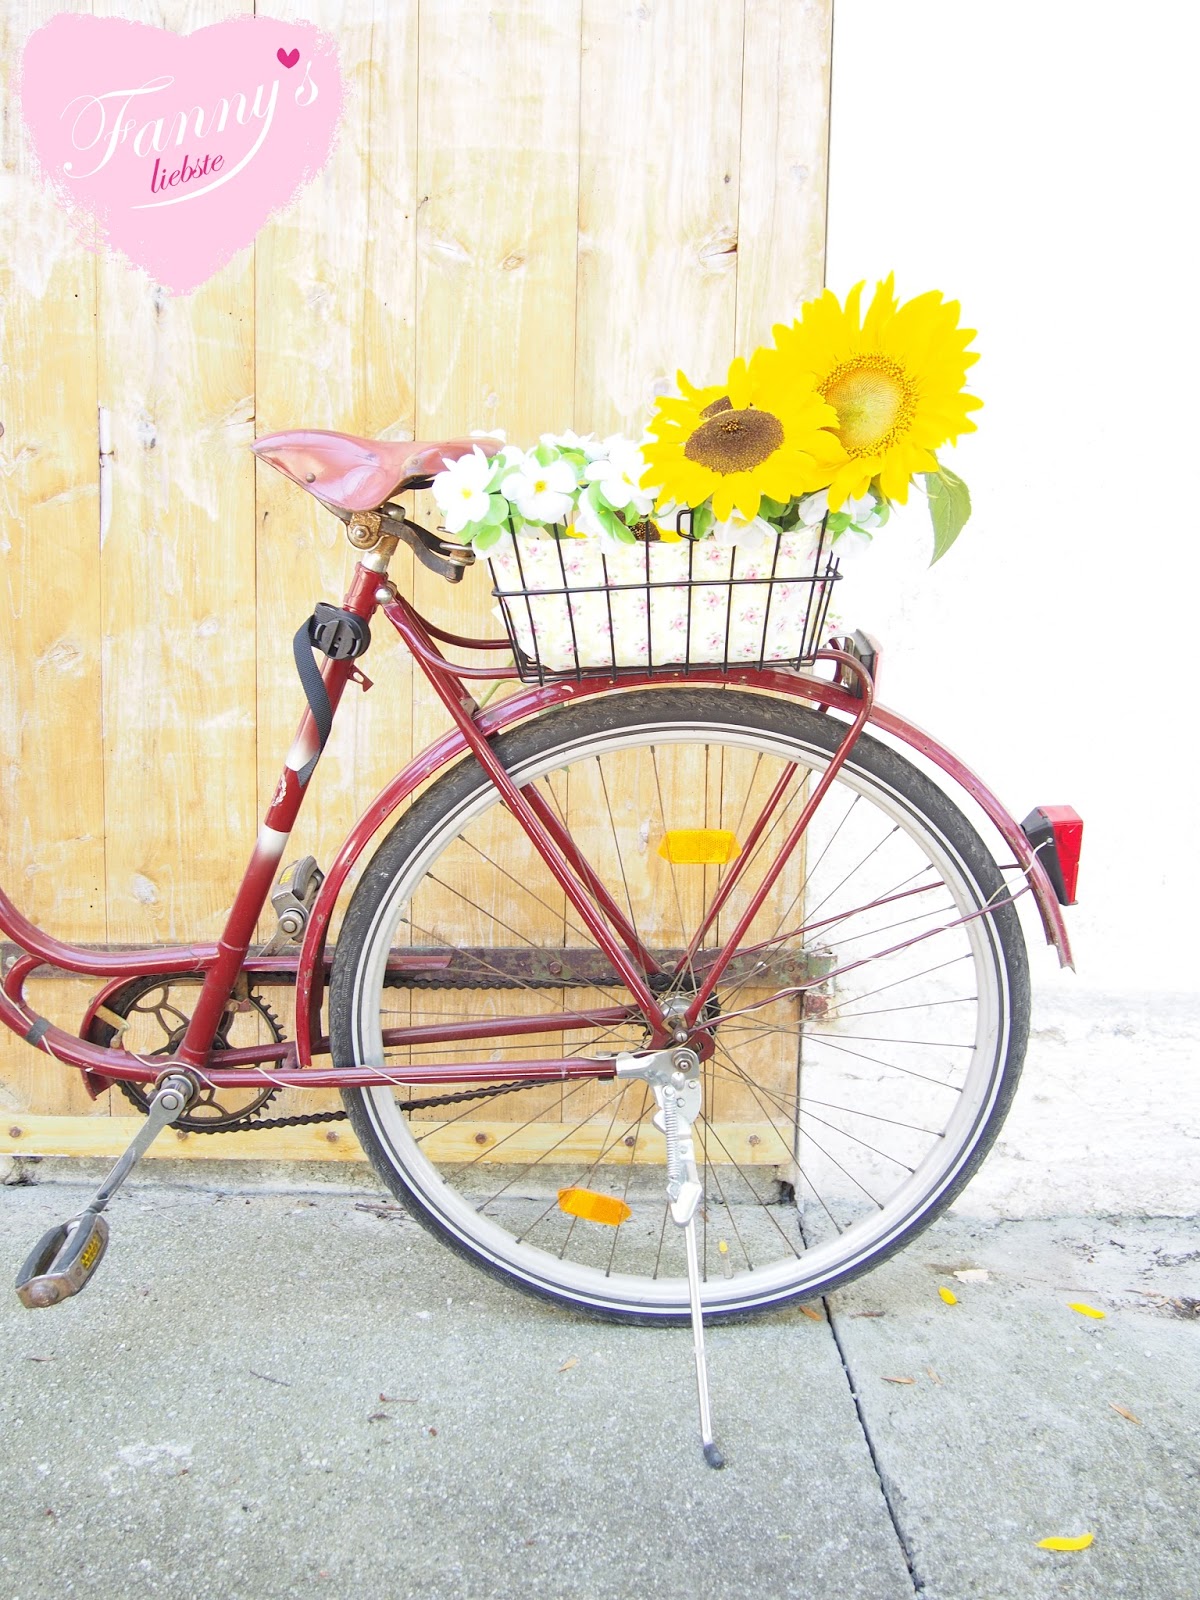 Fahrrad ♥ Blumen - Fanny♥s liebste